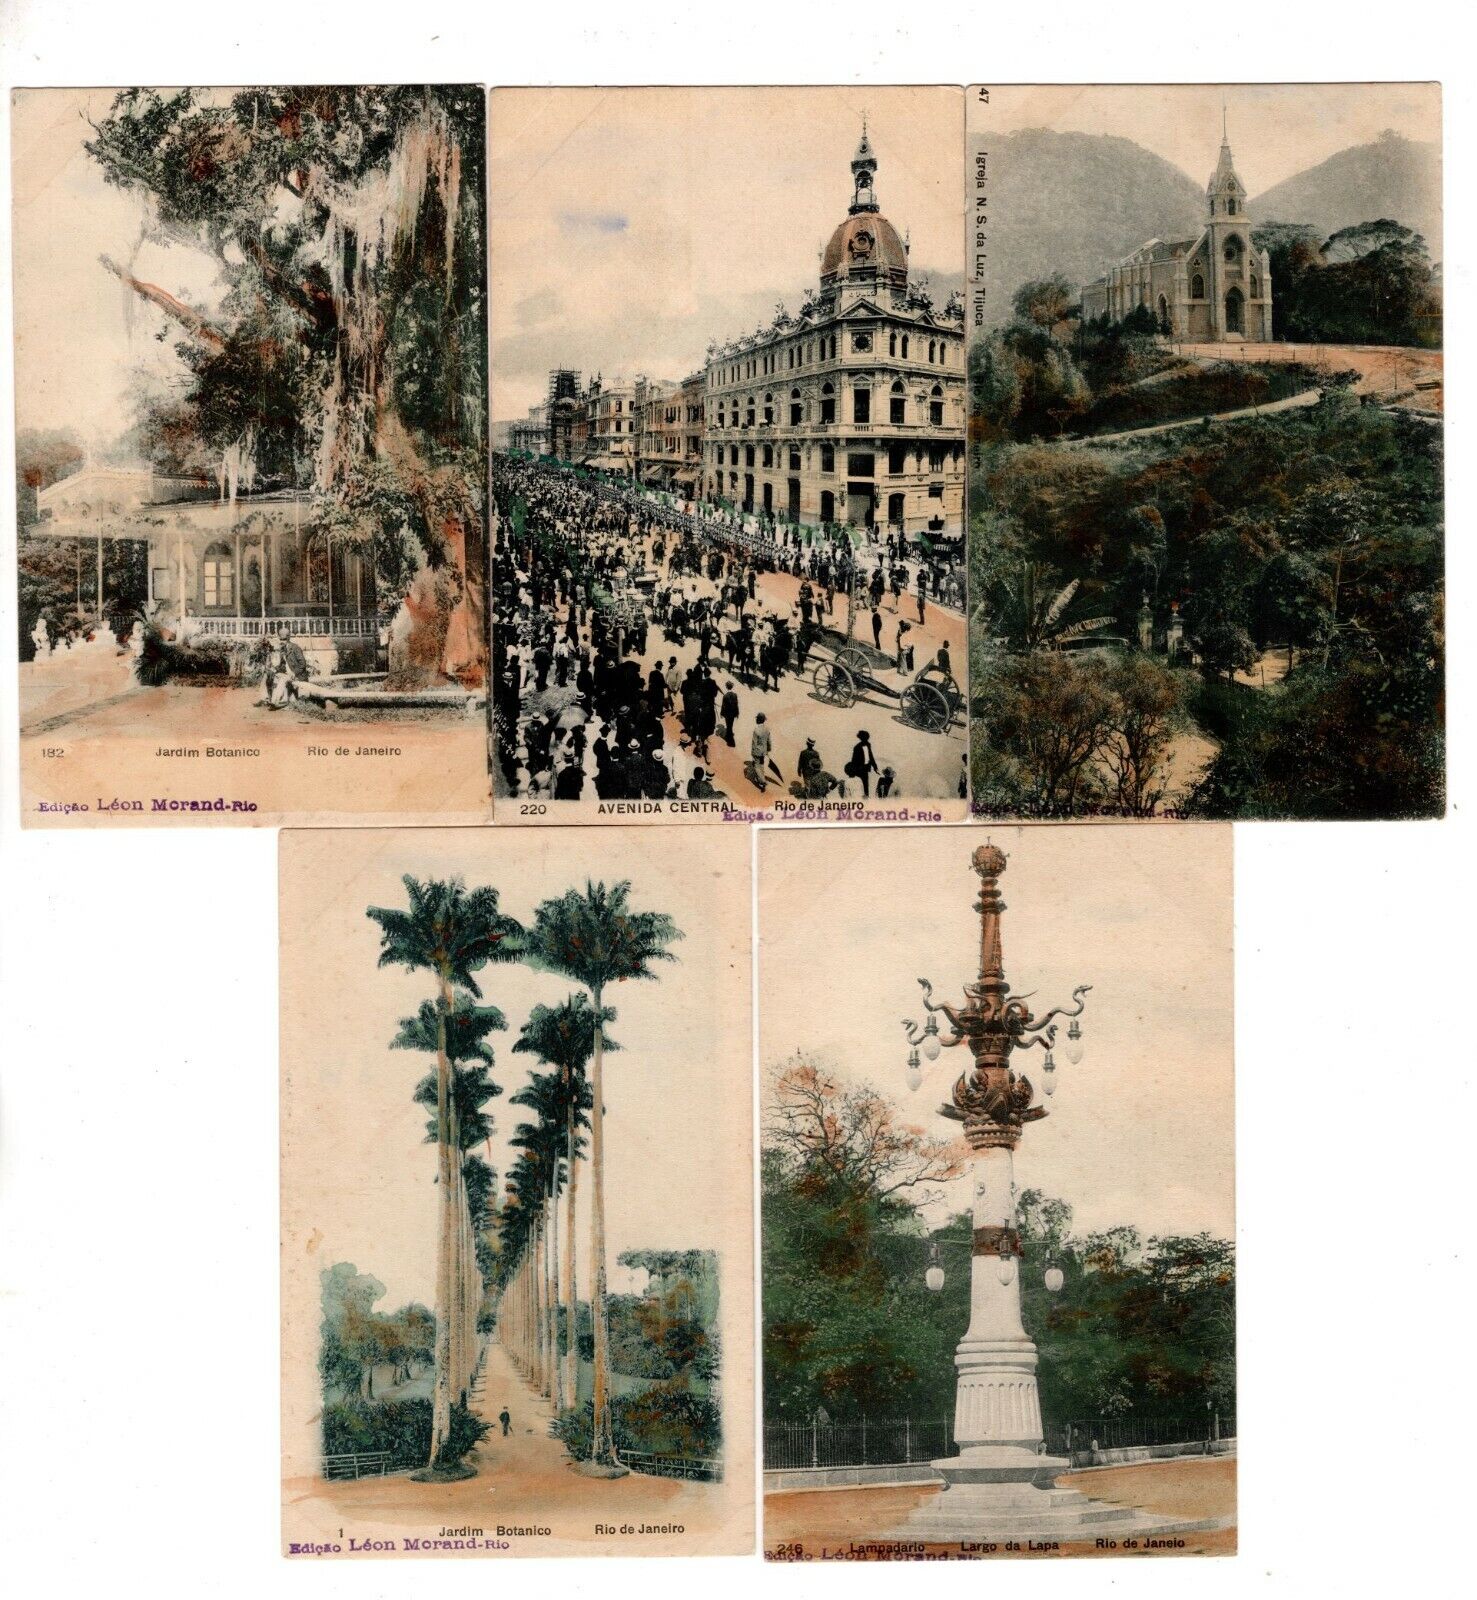 10 VINTAGE BRAZIL POSTCARDS, RIO DE JANEIRO, CIRCA 1900